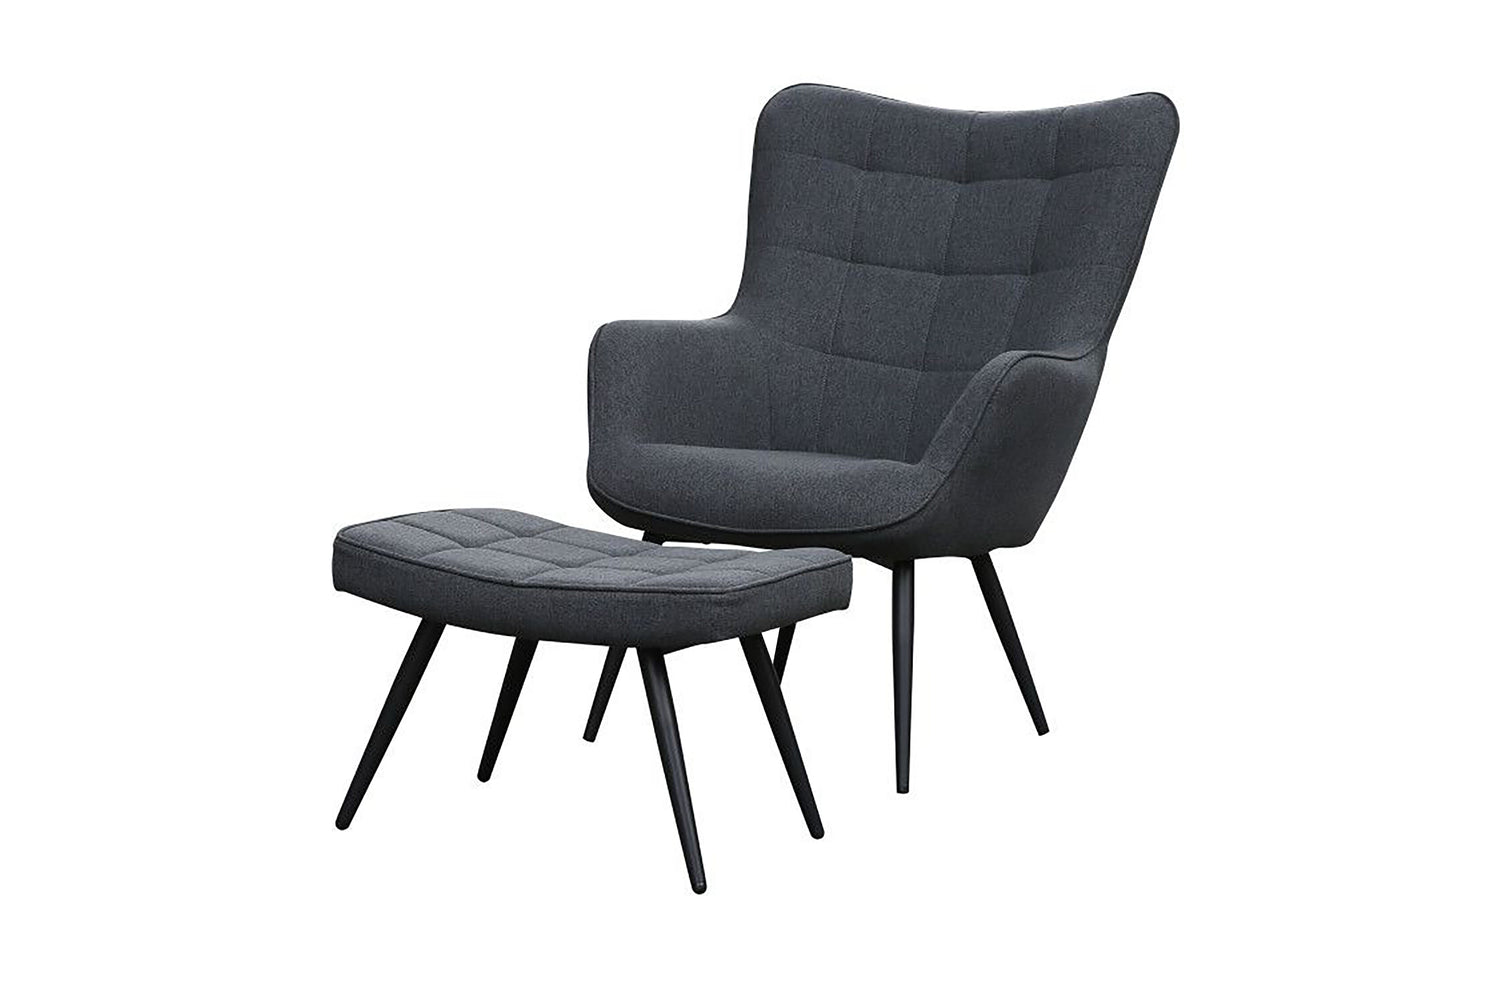 UTA Sessel, Gestell – grau, oder in sandfarben byLIVING grün schwarz, schwarz, in